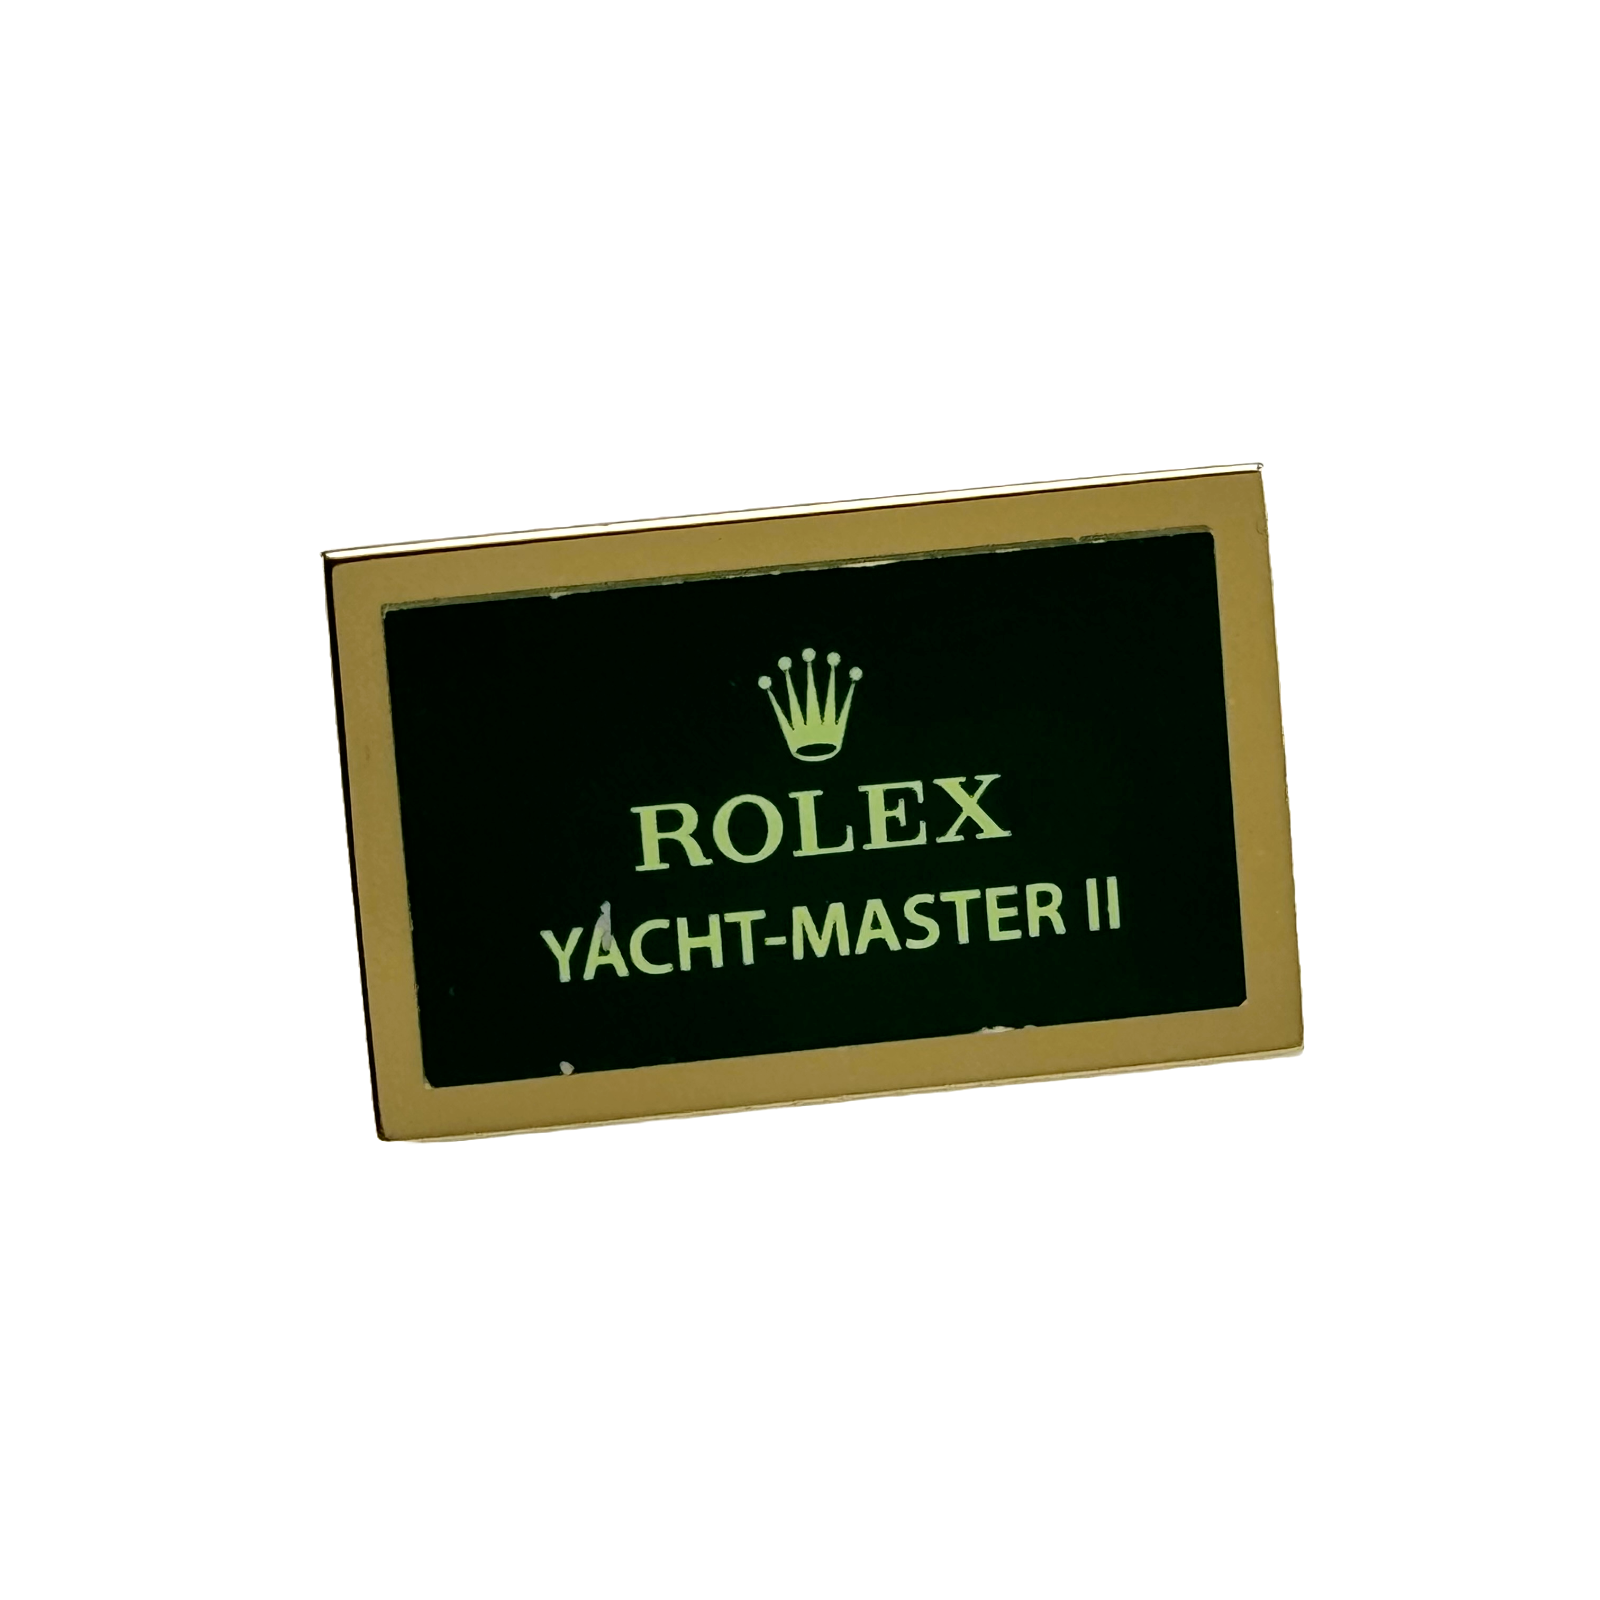  Rolex Yacht-Master II 2 Display Aufsteller Schild Konzessionär standee sign